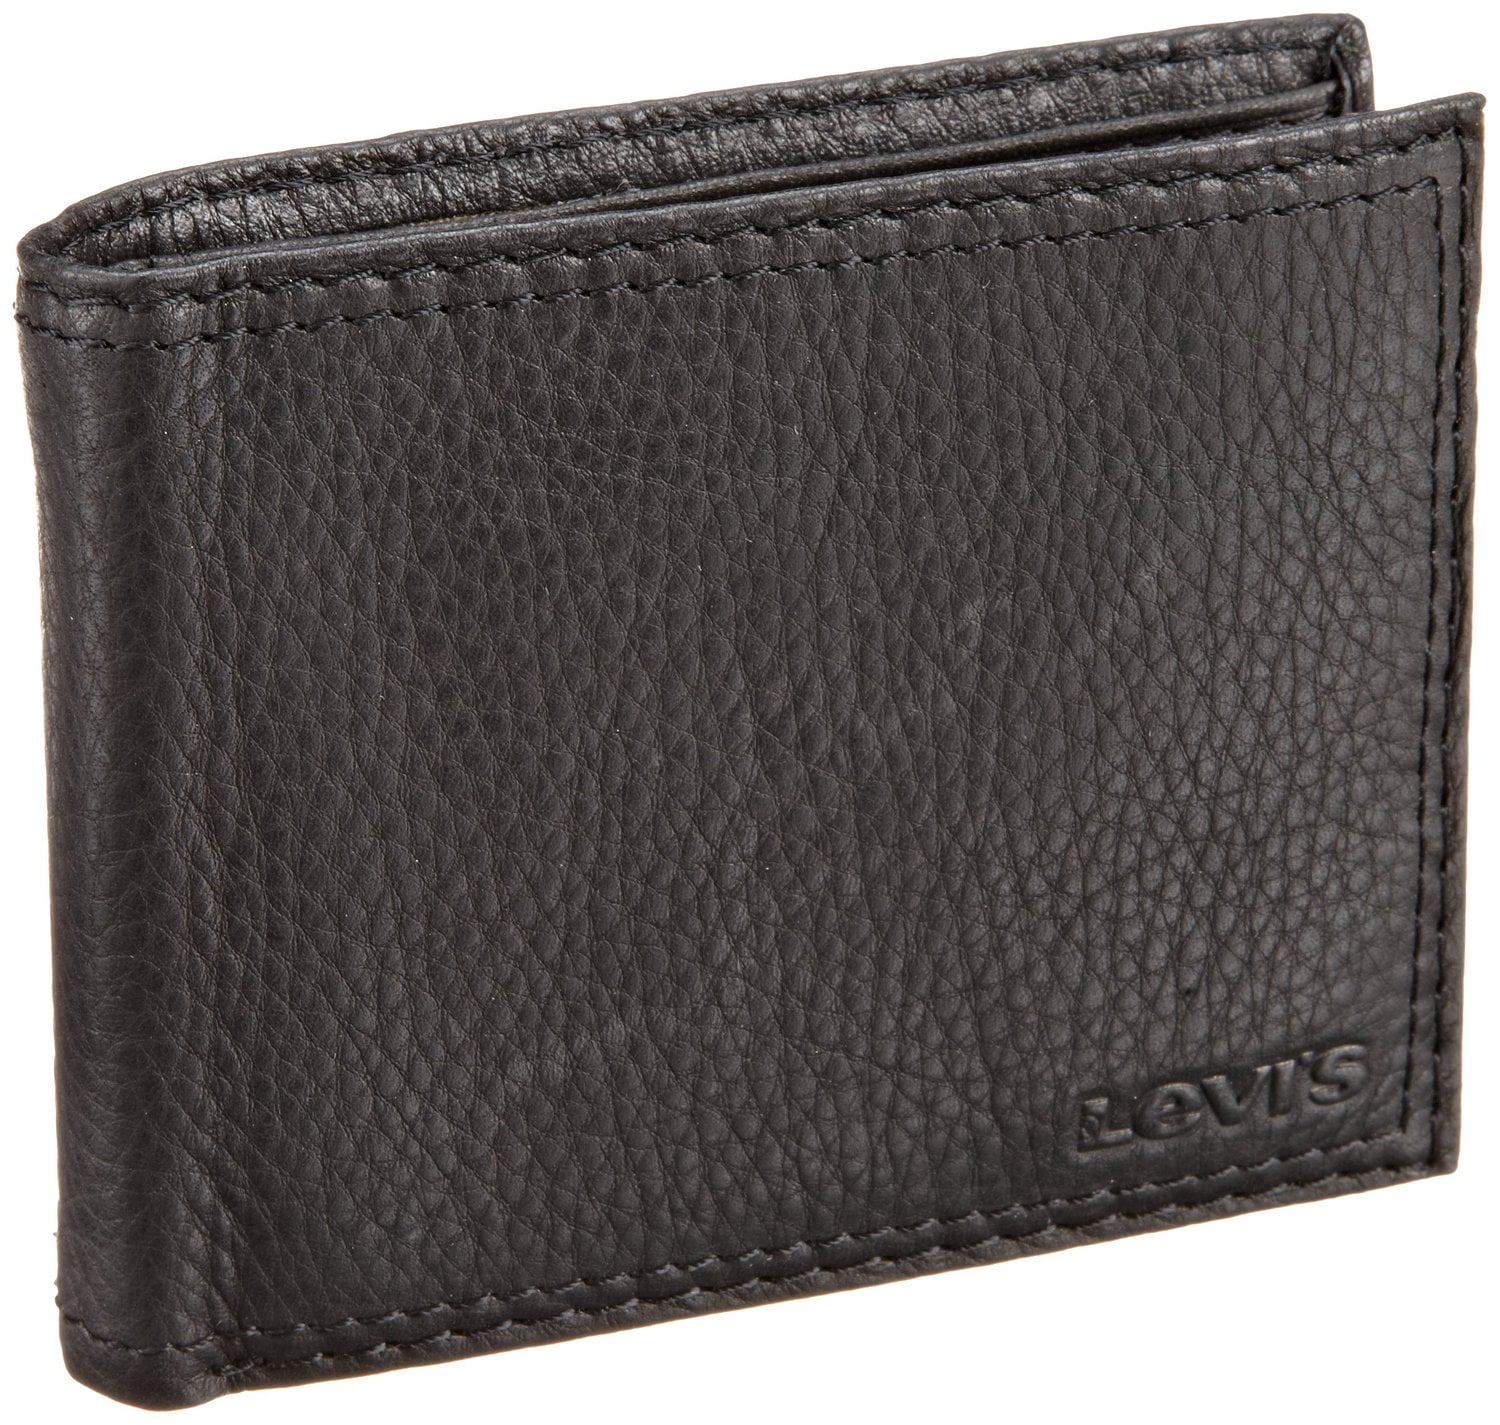 X-Capacity Slim Men's Bifold Leather Wallet - Walmart.com